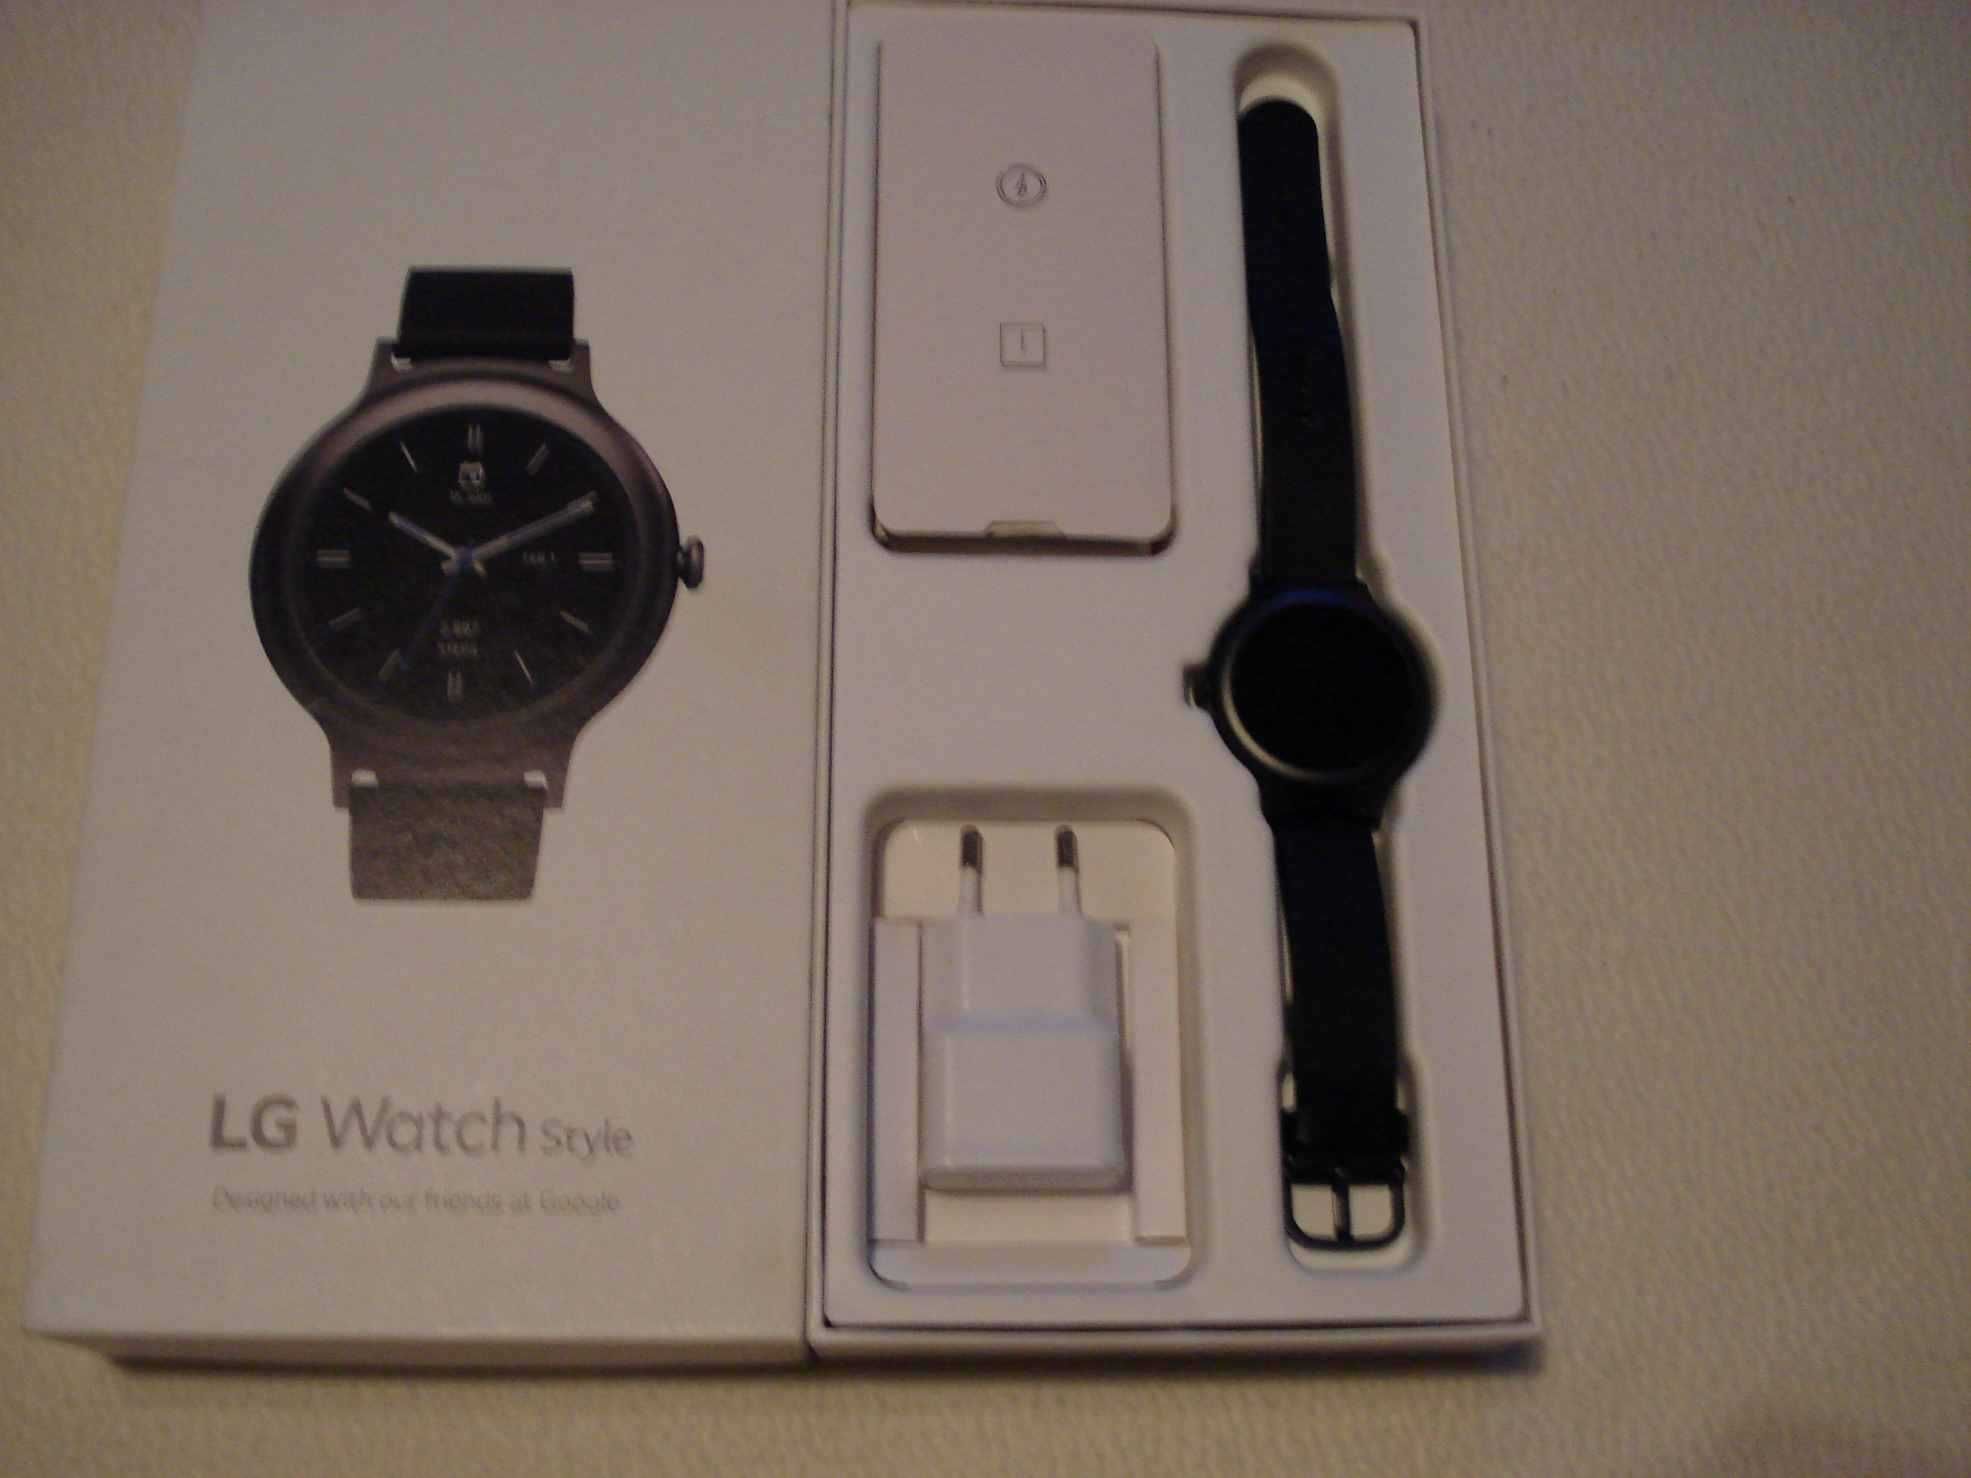 Smartwatch LG  Style W 270